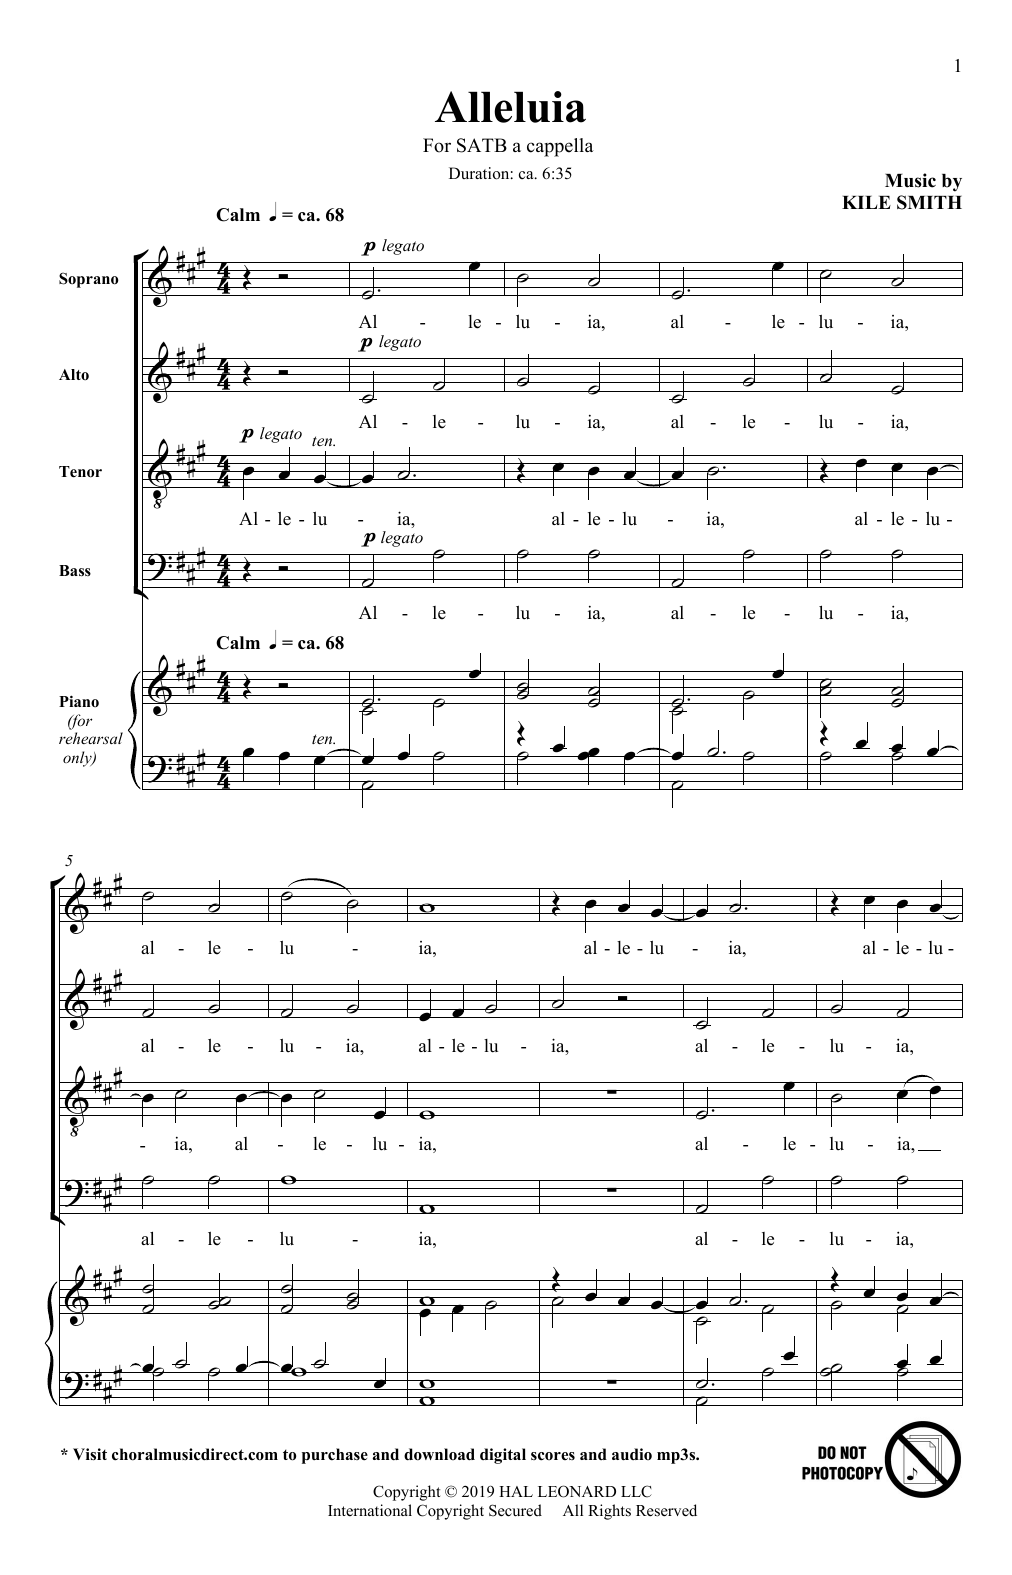 Alleluia (SATB Choir) von Kile Smith